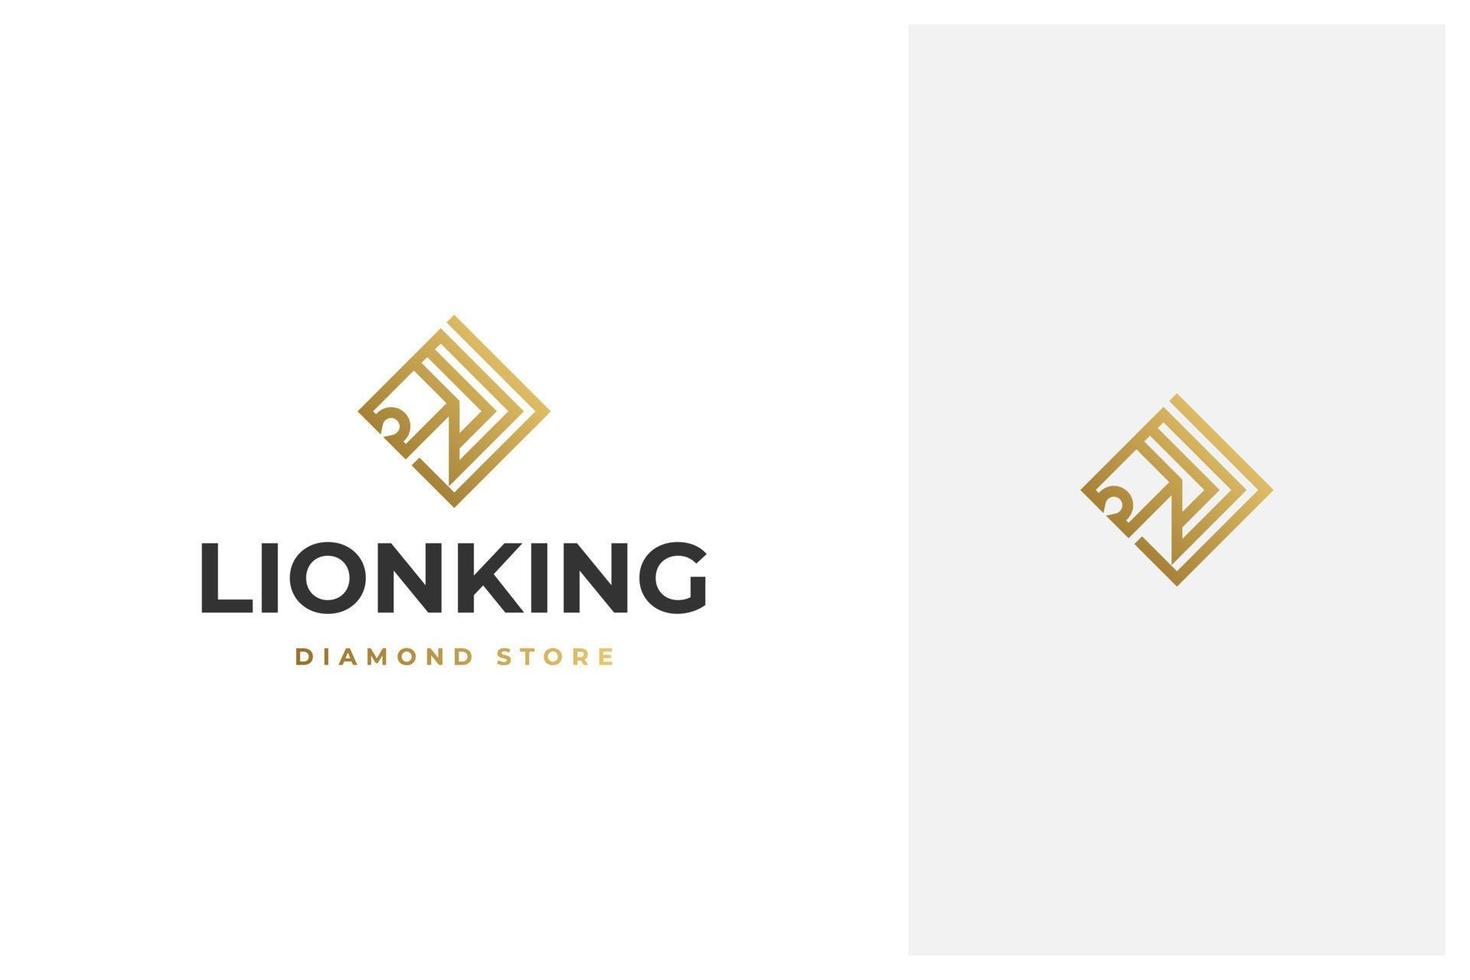 cabeça de leão de luxo elegante minimalista simples e design de logotipo de vetor de joias de diamante em estilo de contorno de arte de linha com cor dourada